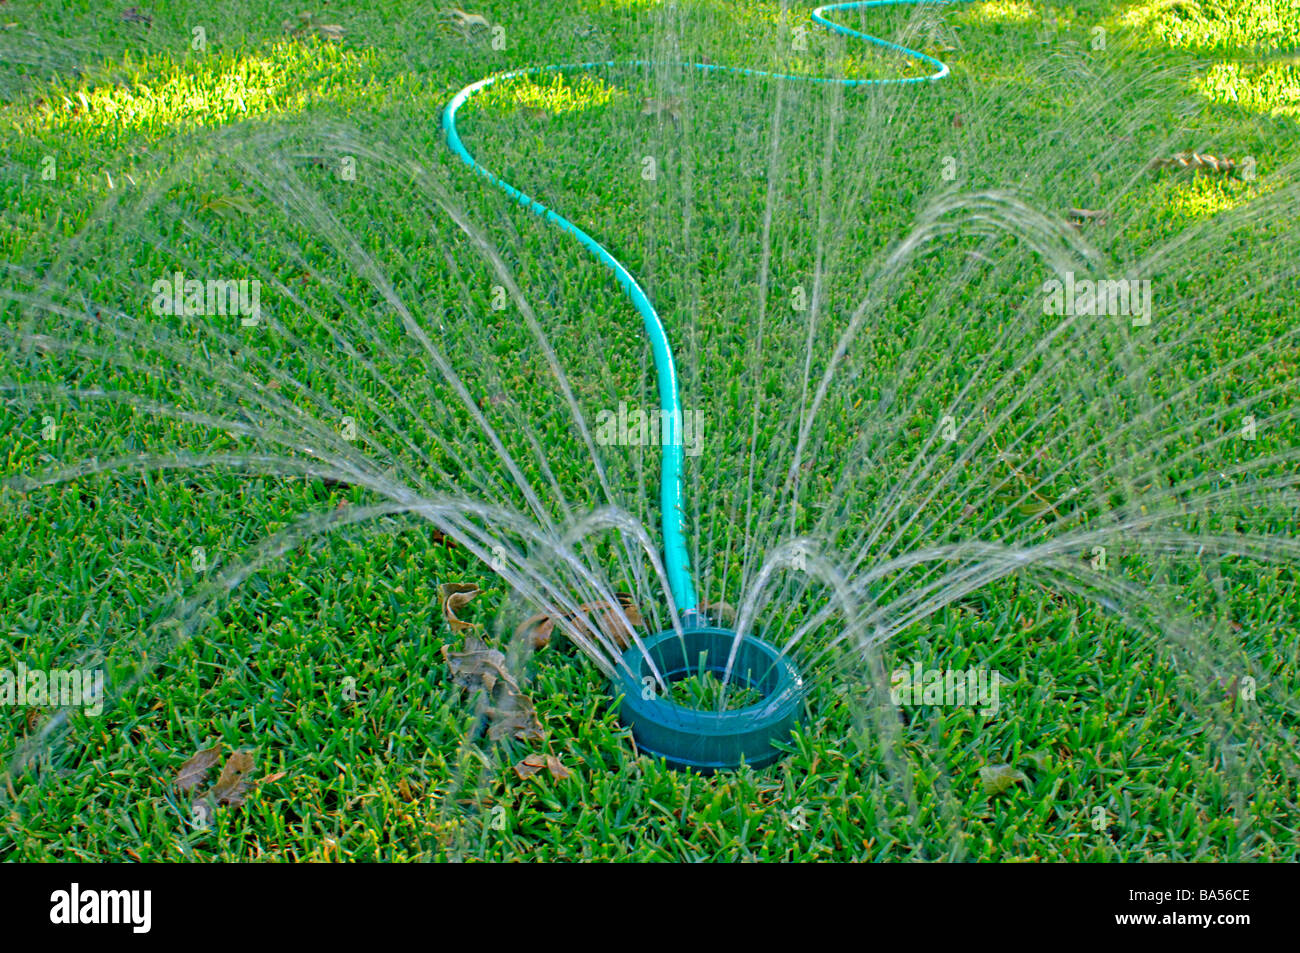 Sprinkler prato raffigurante il consumo di acqua che rappresenta il 30% del totale del consumo di acqua in molte città statunitensi Foto Stock